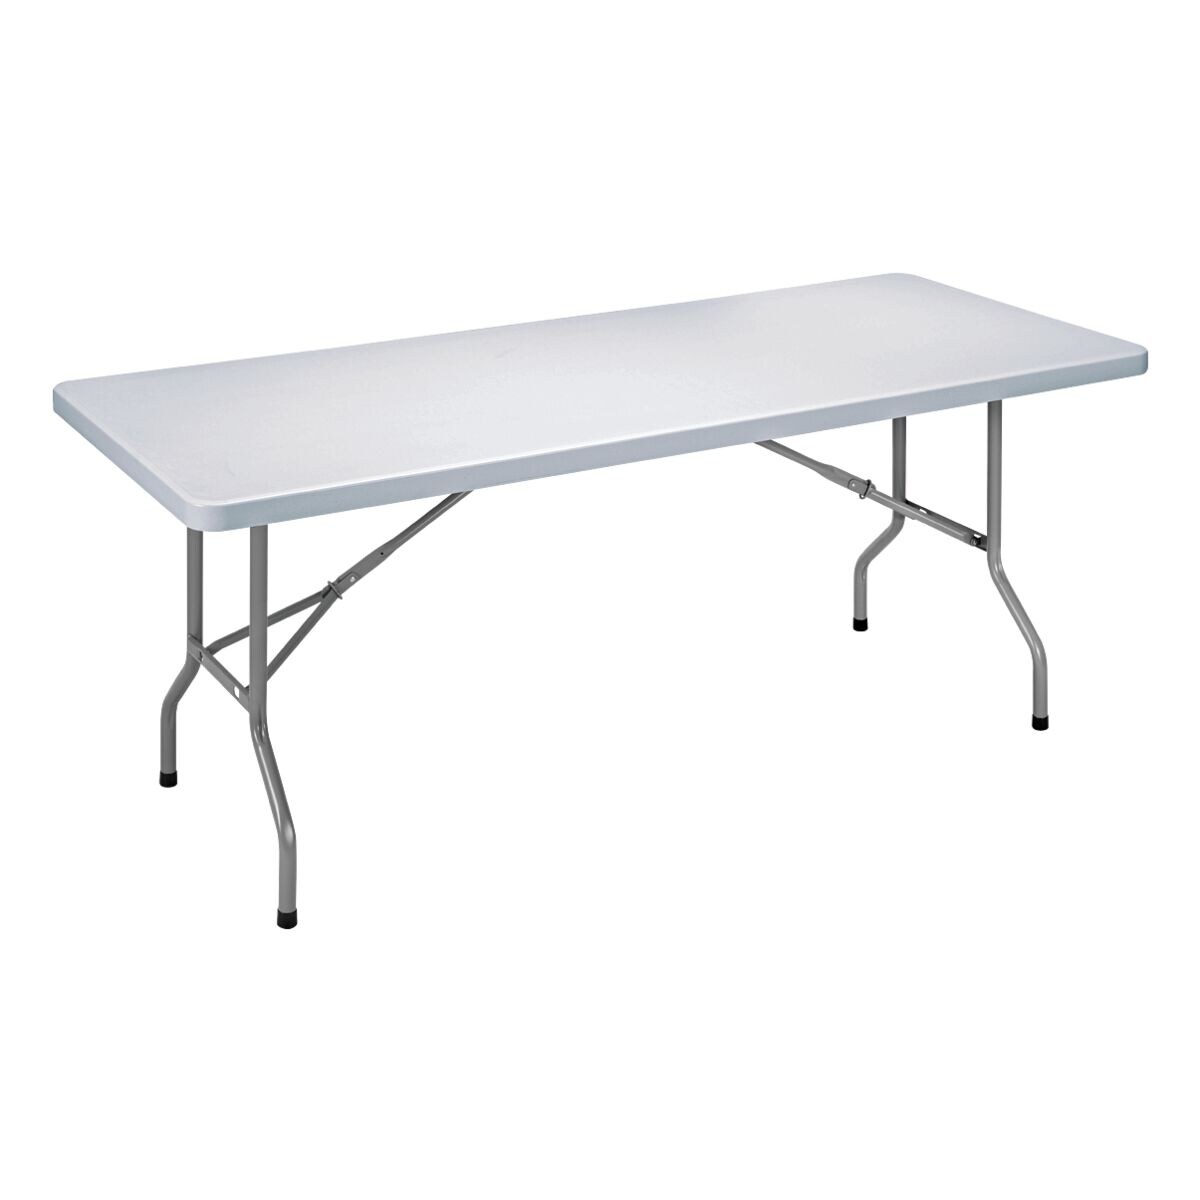 SODEMATUB table pliante table pliante 183 cm, pliable argent